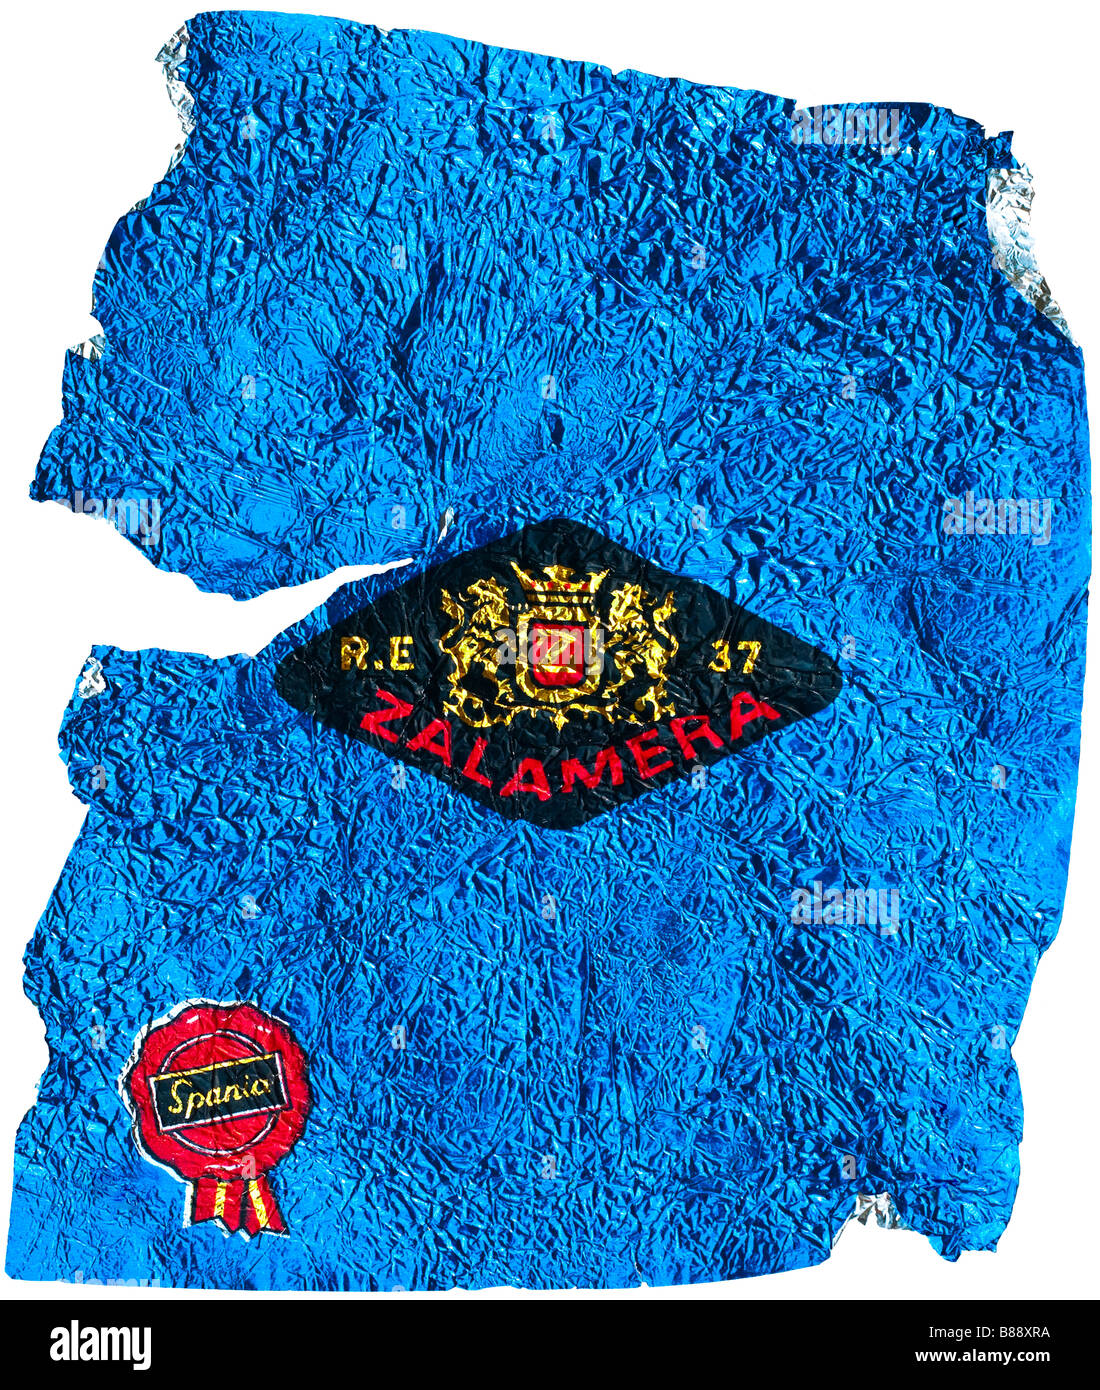 Agrumi wrapper da Spagna - Zalamera illustrazione di cresta blu su un foglio di alluminio. Foto Stock